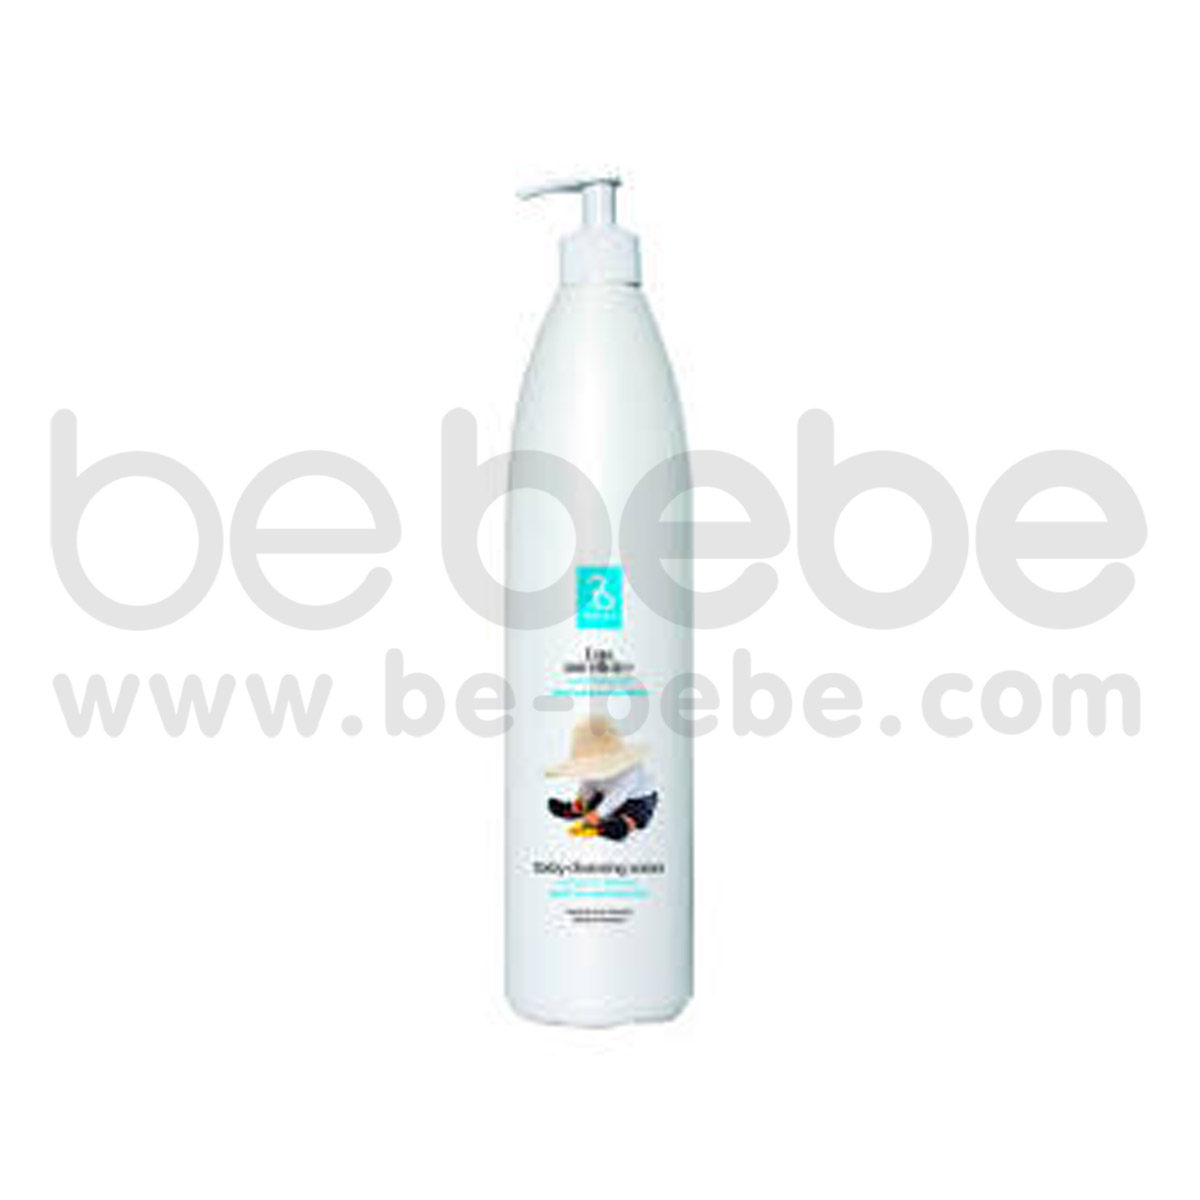 BeBe Bio : Cleansing water 500 ml.